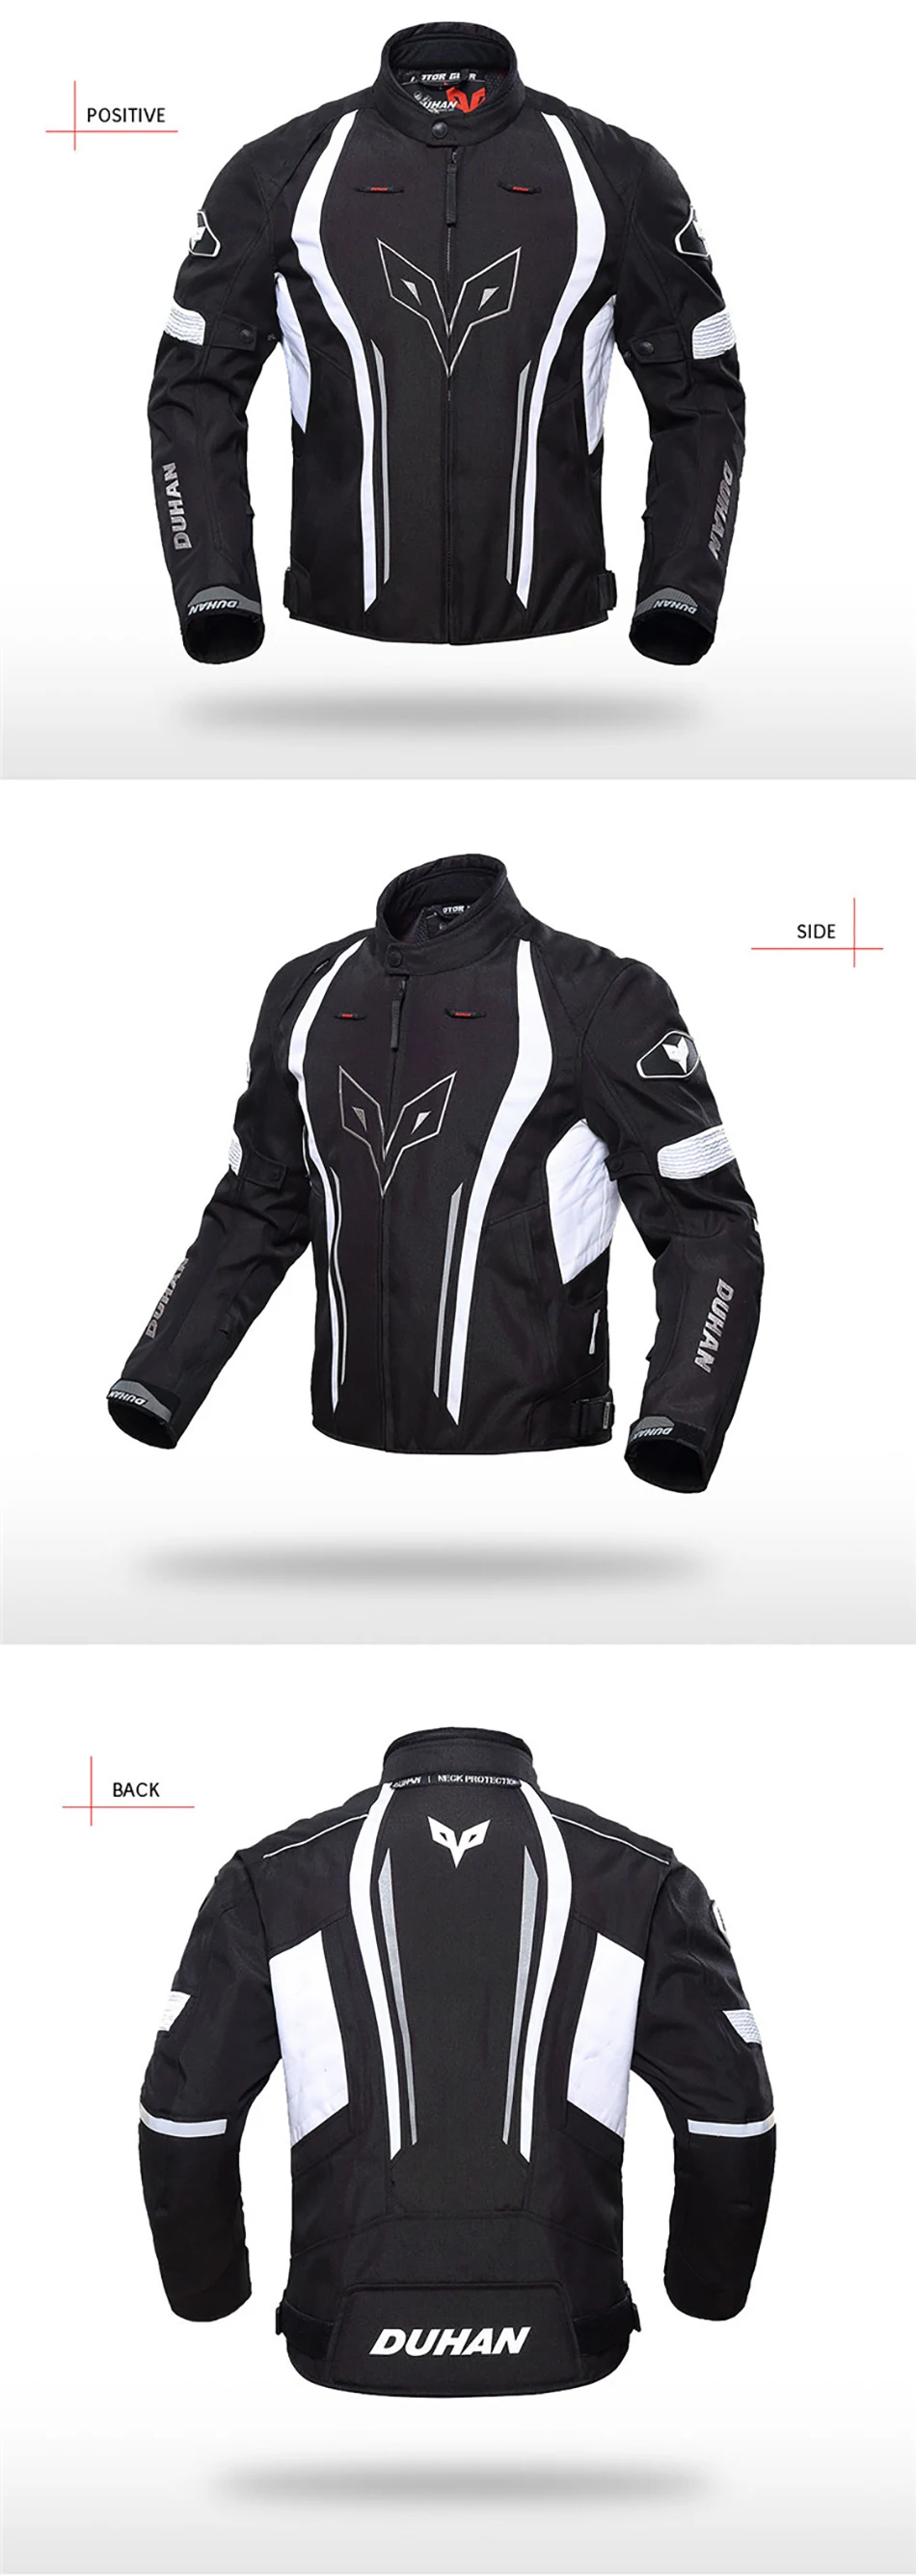 DUHAN мотоциклетная куртка, водонепроницаемая, для спорта на открытом воздухе, для езды на мотоцикле, длинная куртка, защитная с пятью защитными D-205